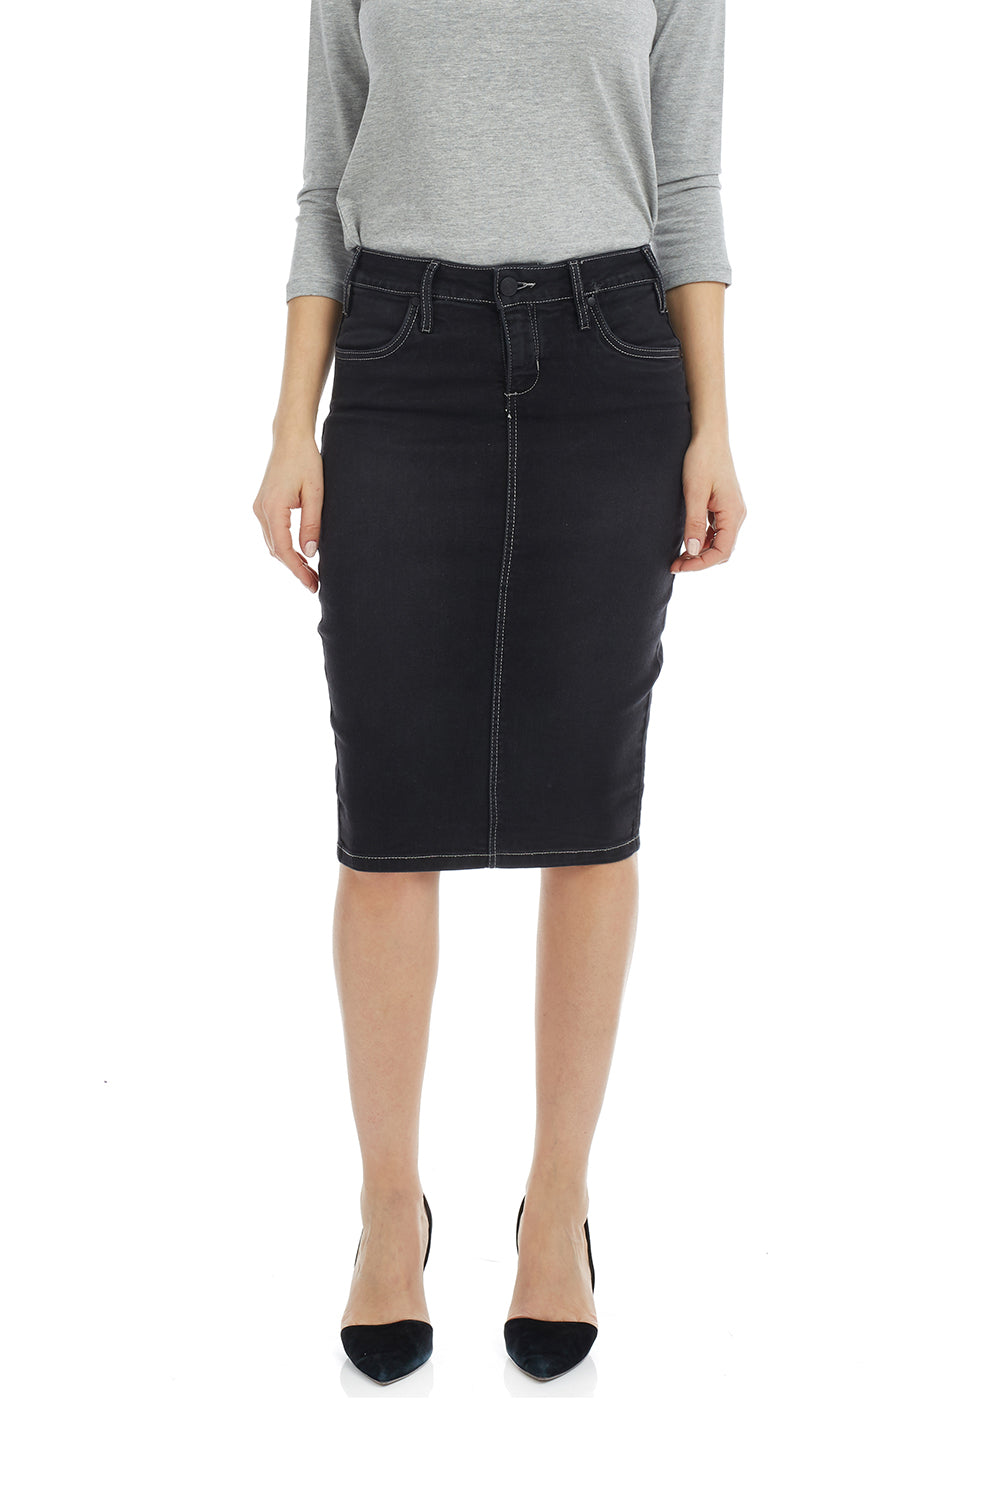 black denim jean skirt